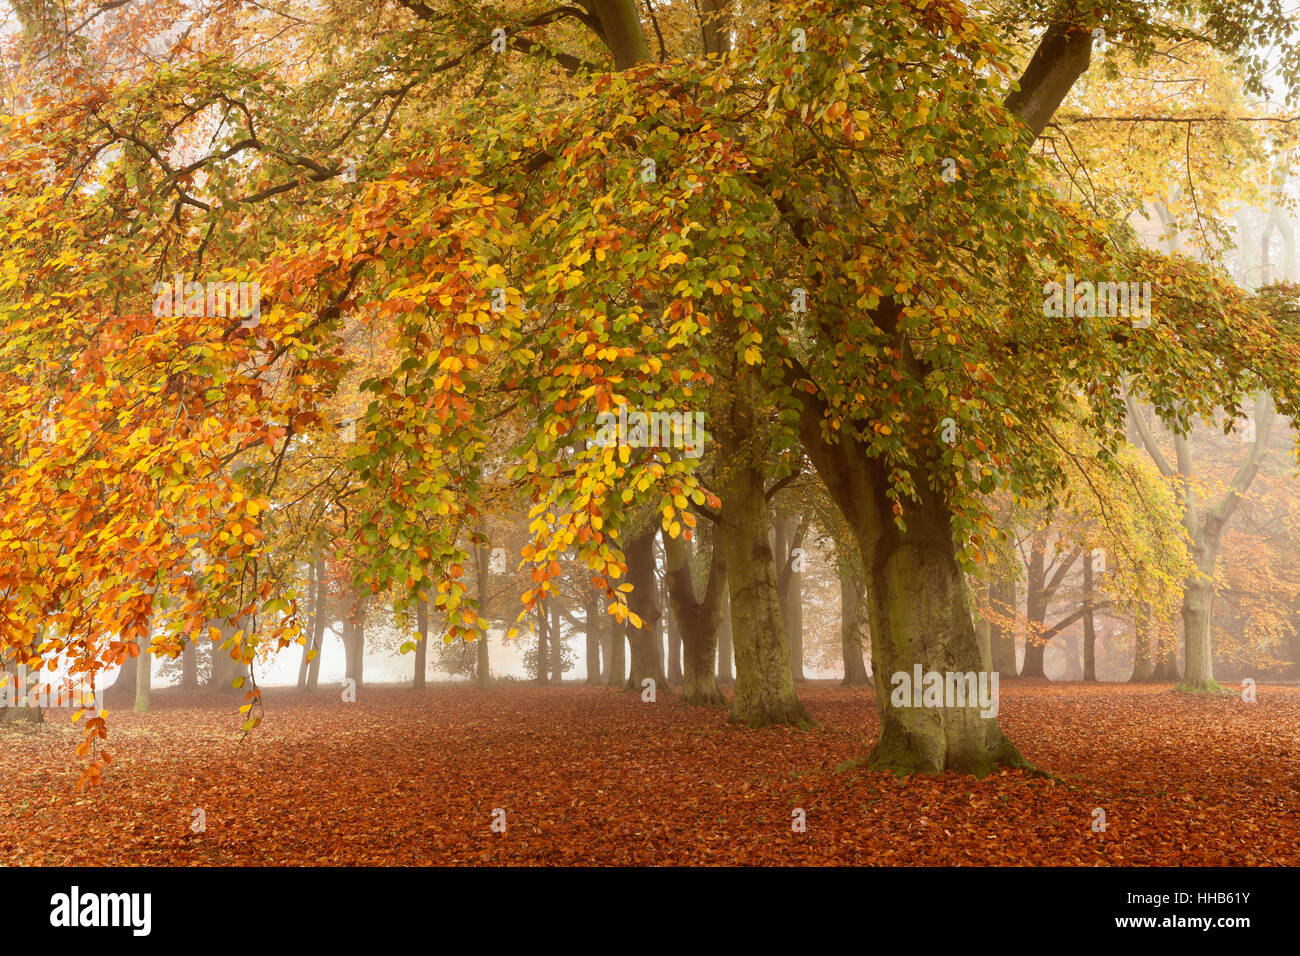 Baysgarth Park, Barton-upon-Humber, Nord du Lincolnshire, au Royaume-Uni. De l'automne. Banque D'Images